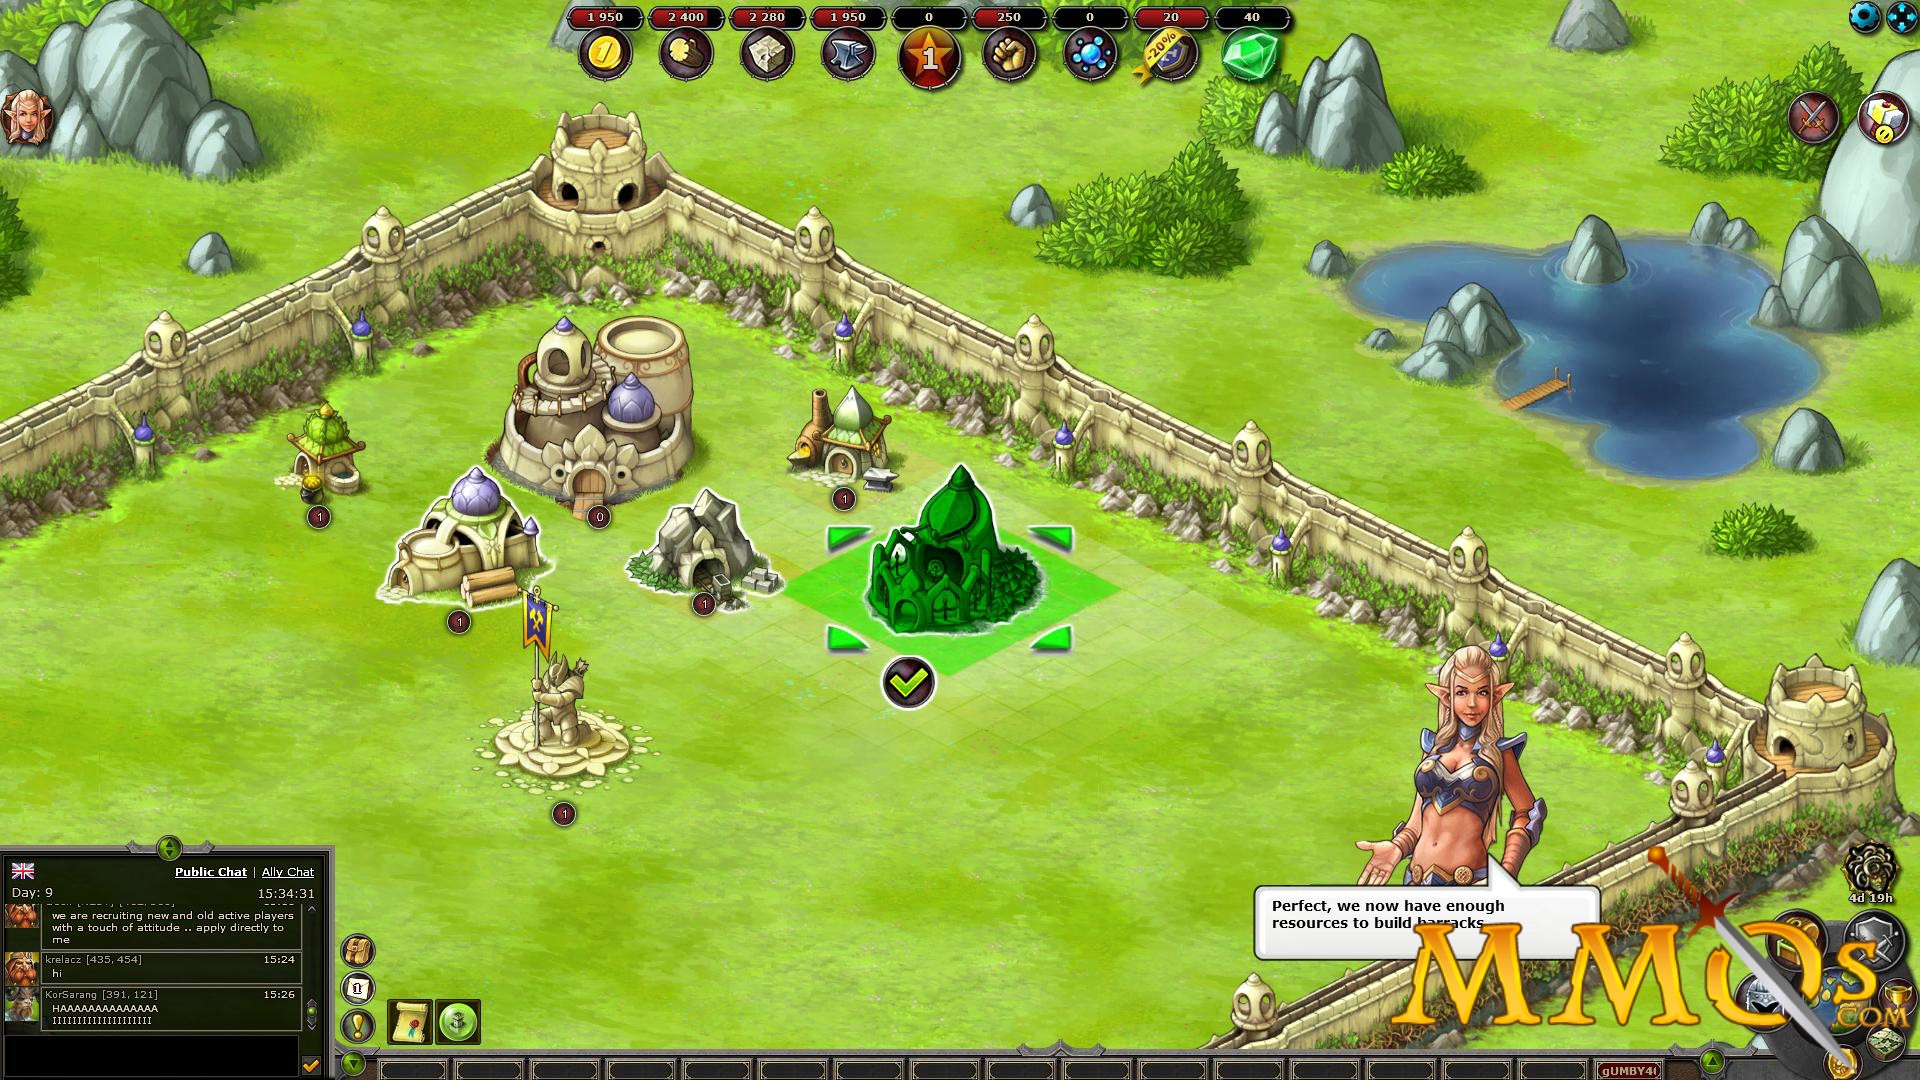 War of Wizards: Magic & Warrior Sorcerer RPG Game Ver. 1.19 MOD